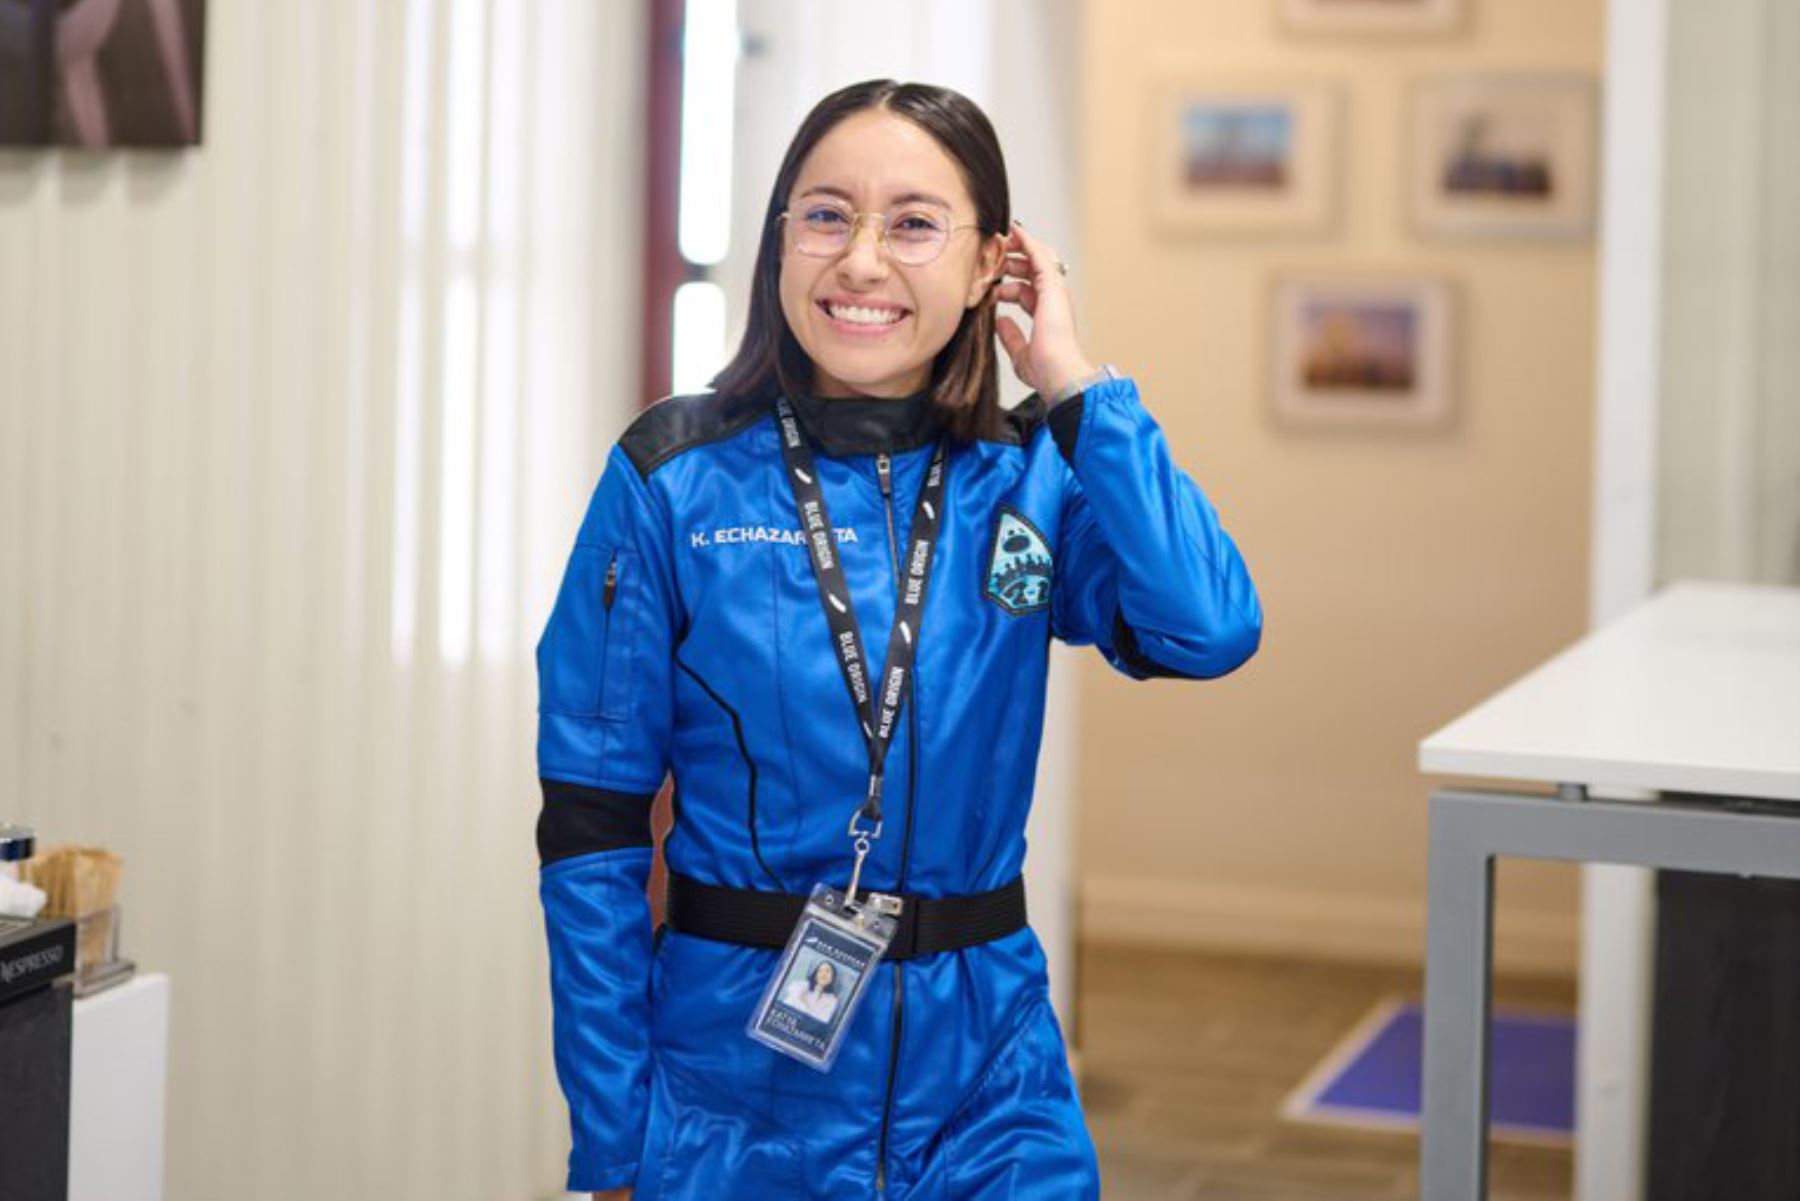 Katya Echazarreta, nacida en Guadalajara, llegó a Estados Unidos cuando tenía siete años. Ahora con 26, también se ha convertido en la estadounidense más joven en ir al espacio. Foto: @katvoltage